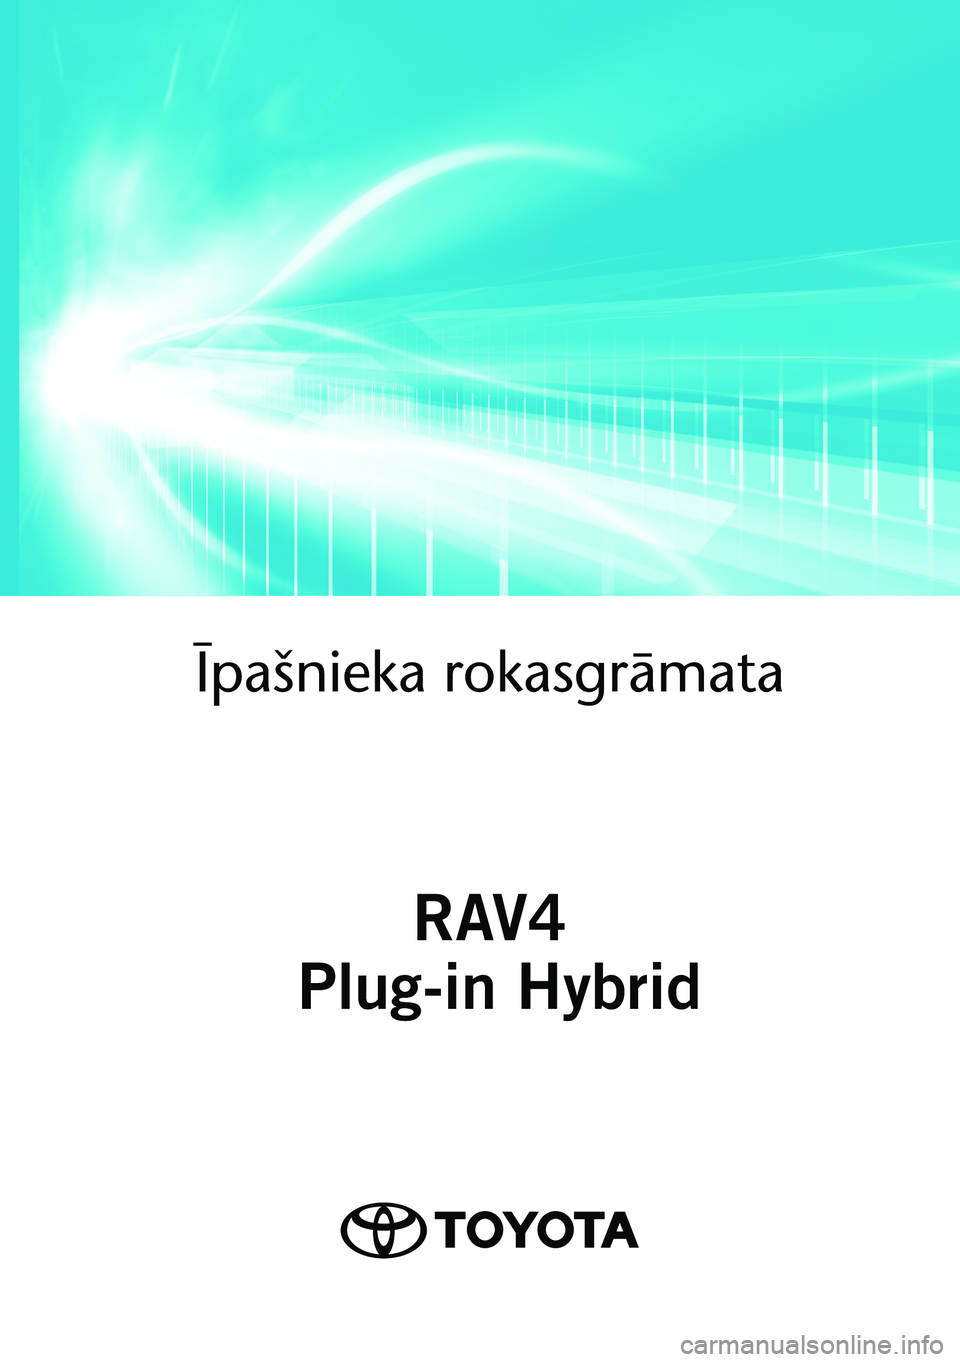 TOYOTA RAV4 PHEV 2021  Lietošanas Instrukcija (in Latvian) OM42E06LV 
As of 02.2021 production vehicles
Īpašnieka rokasgrā\
mata
RAV4
 Plug-in Hybrid
RAV4 Plug-in Hybrid 